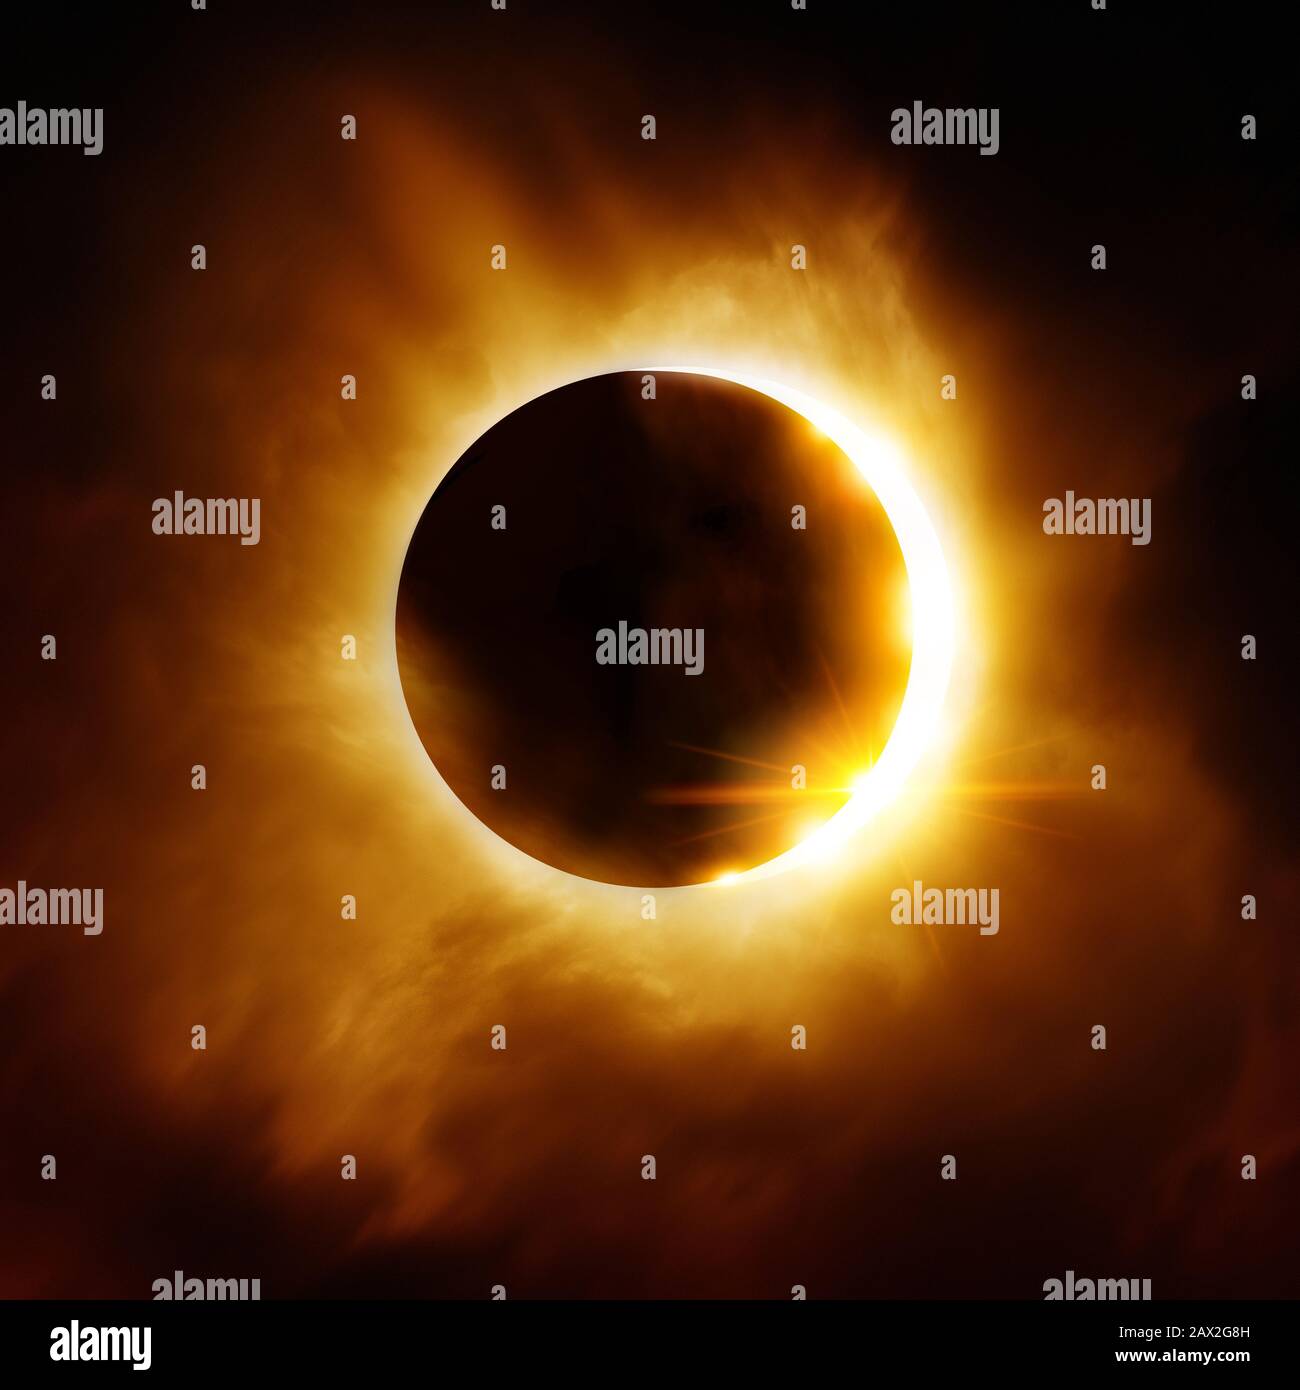 Der Mond, der sich vor der Sonne bewegt, erzeugt eine totale Sonnenfinsternis. Ilustration. Stockfoto